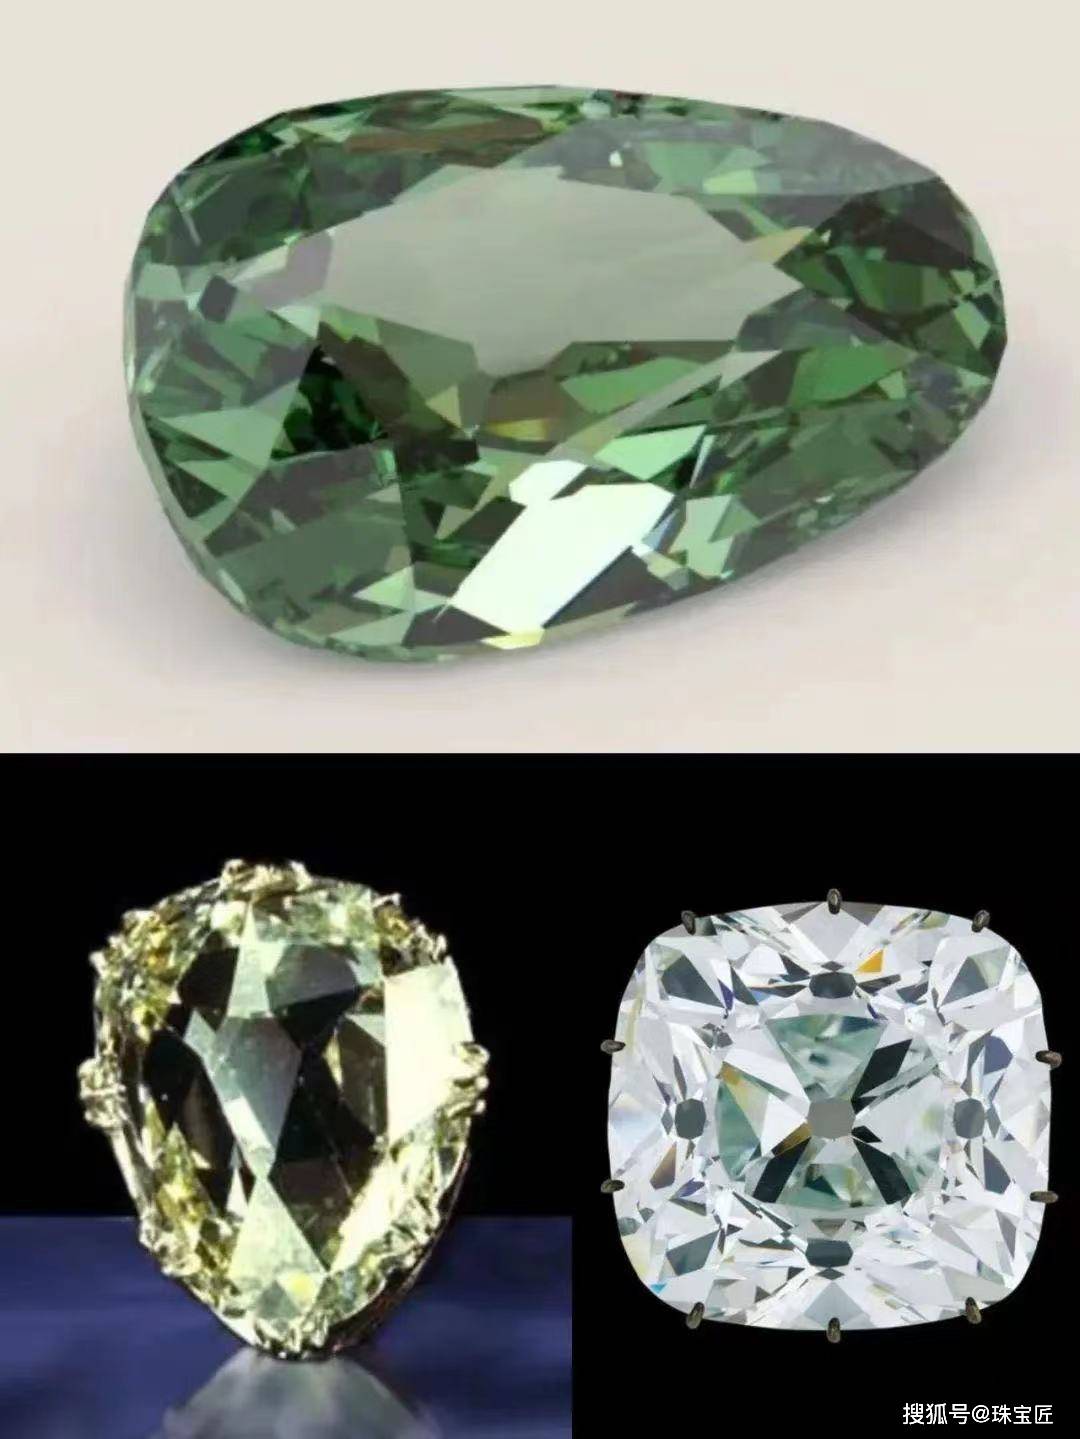 世界第九大钻石，顶级美人的最爱，旷世爱情的见证者：泰勒·伯顿钻石